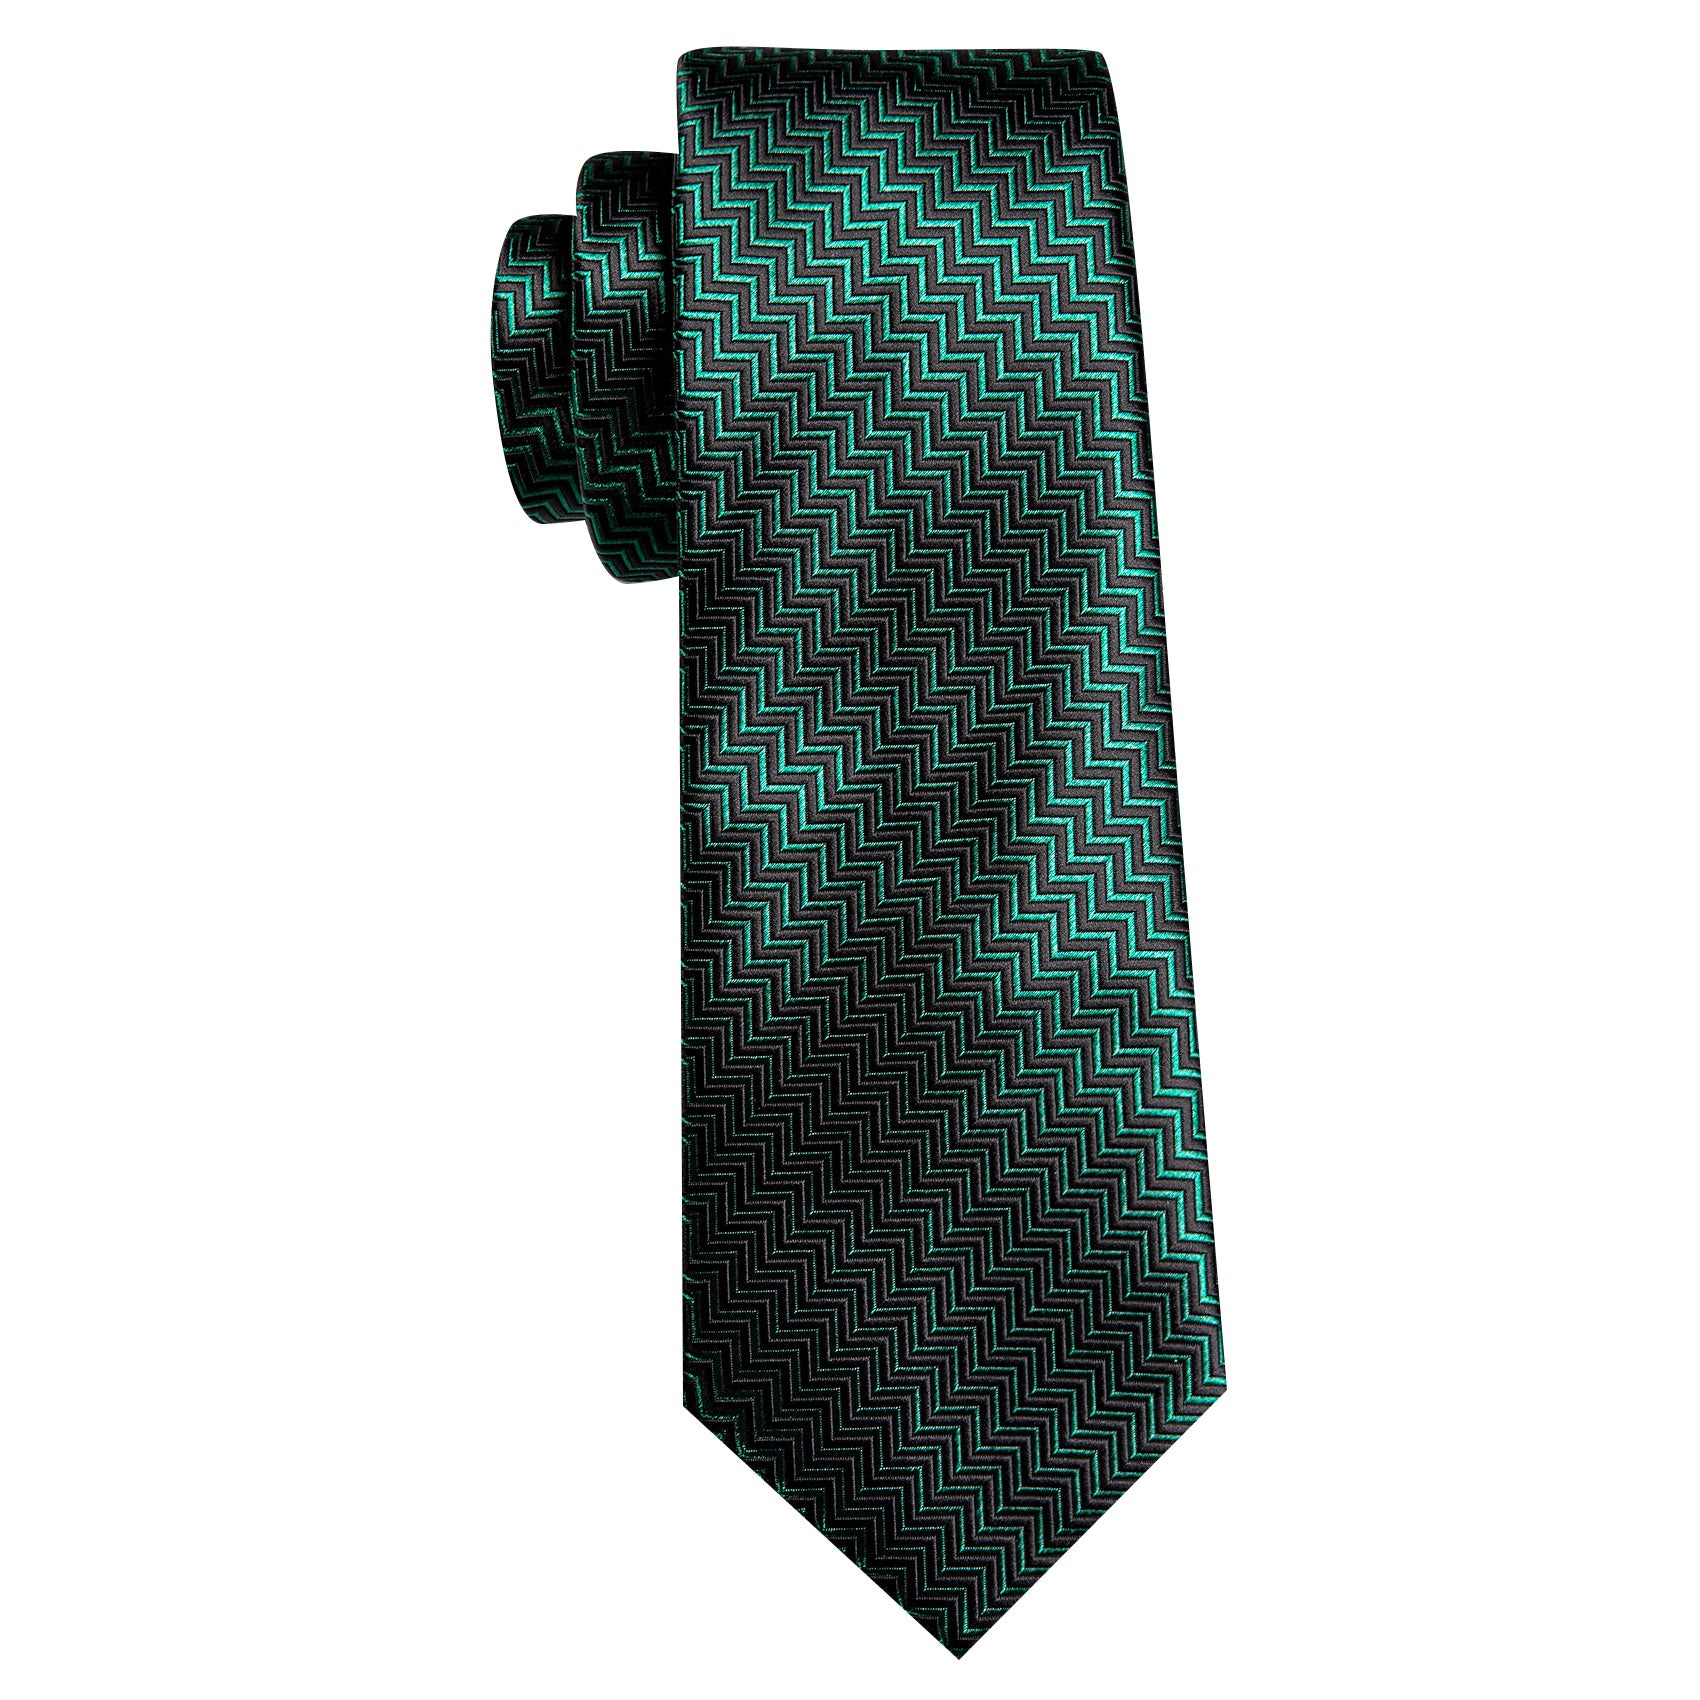 Barry Wang Green Black Ripple Silk Tie Handkerchief Cufflinks Set